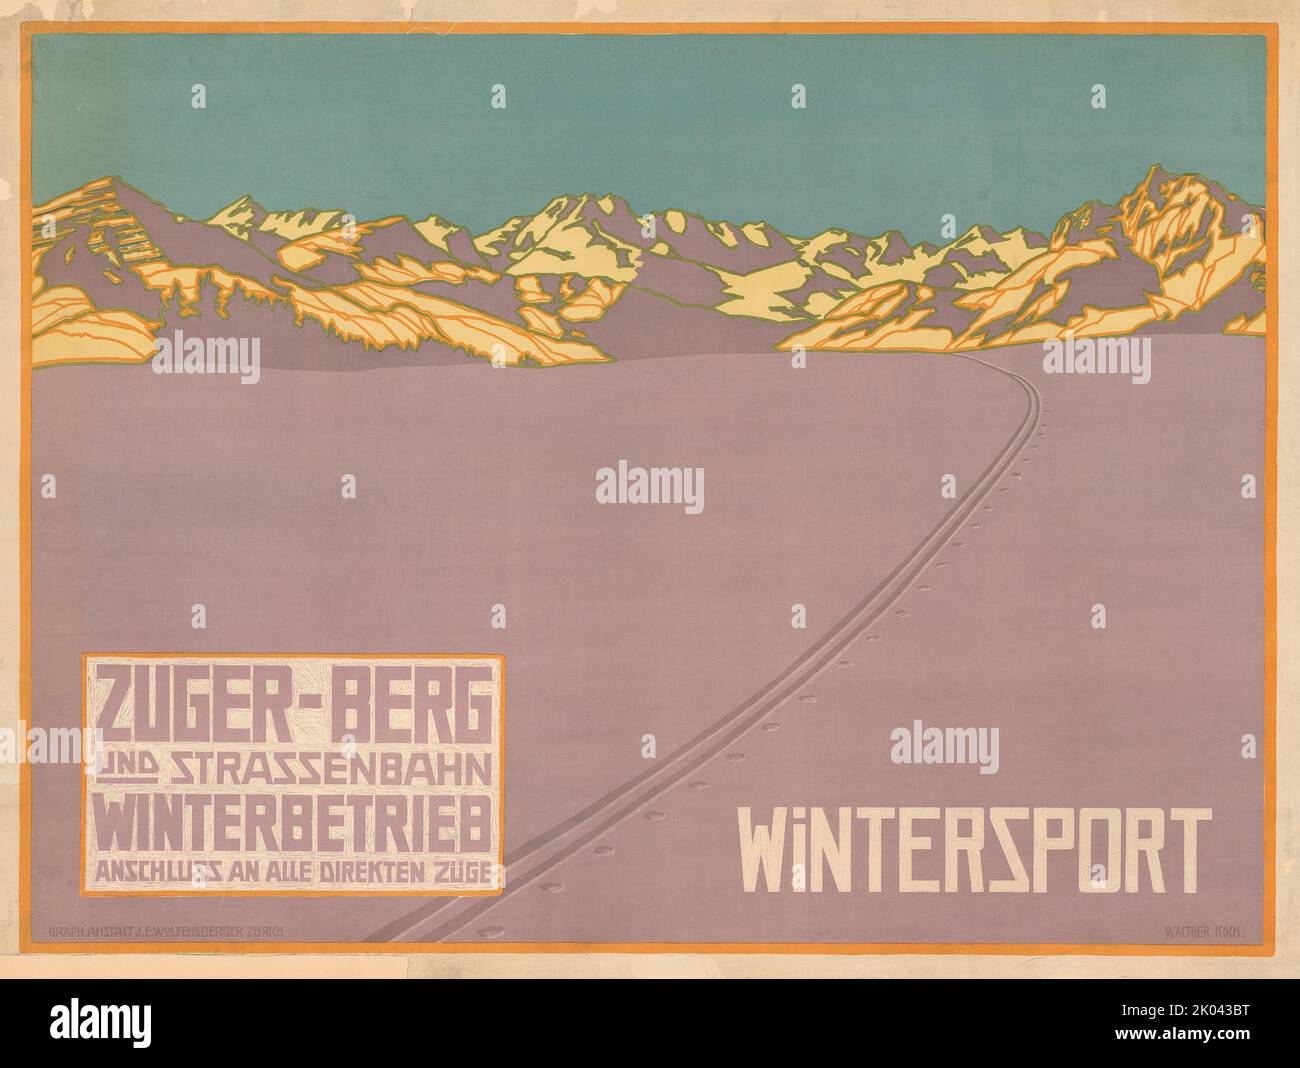 Zuger Berg- und Stra&#xdf;enbahn, c.. 1910. Collezione privata. Foto Stock